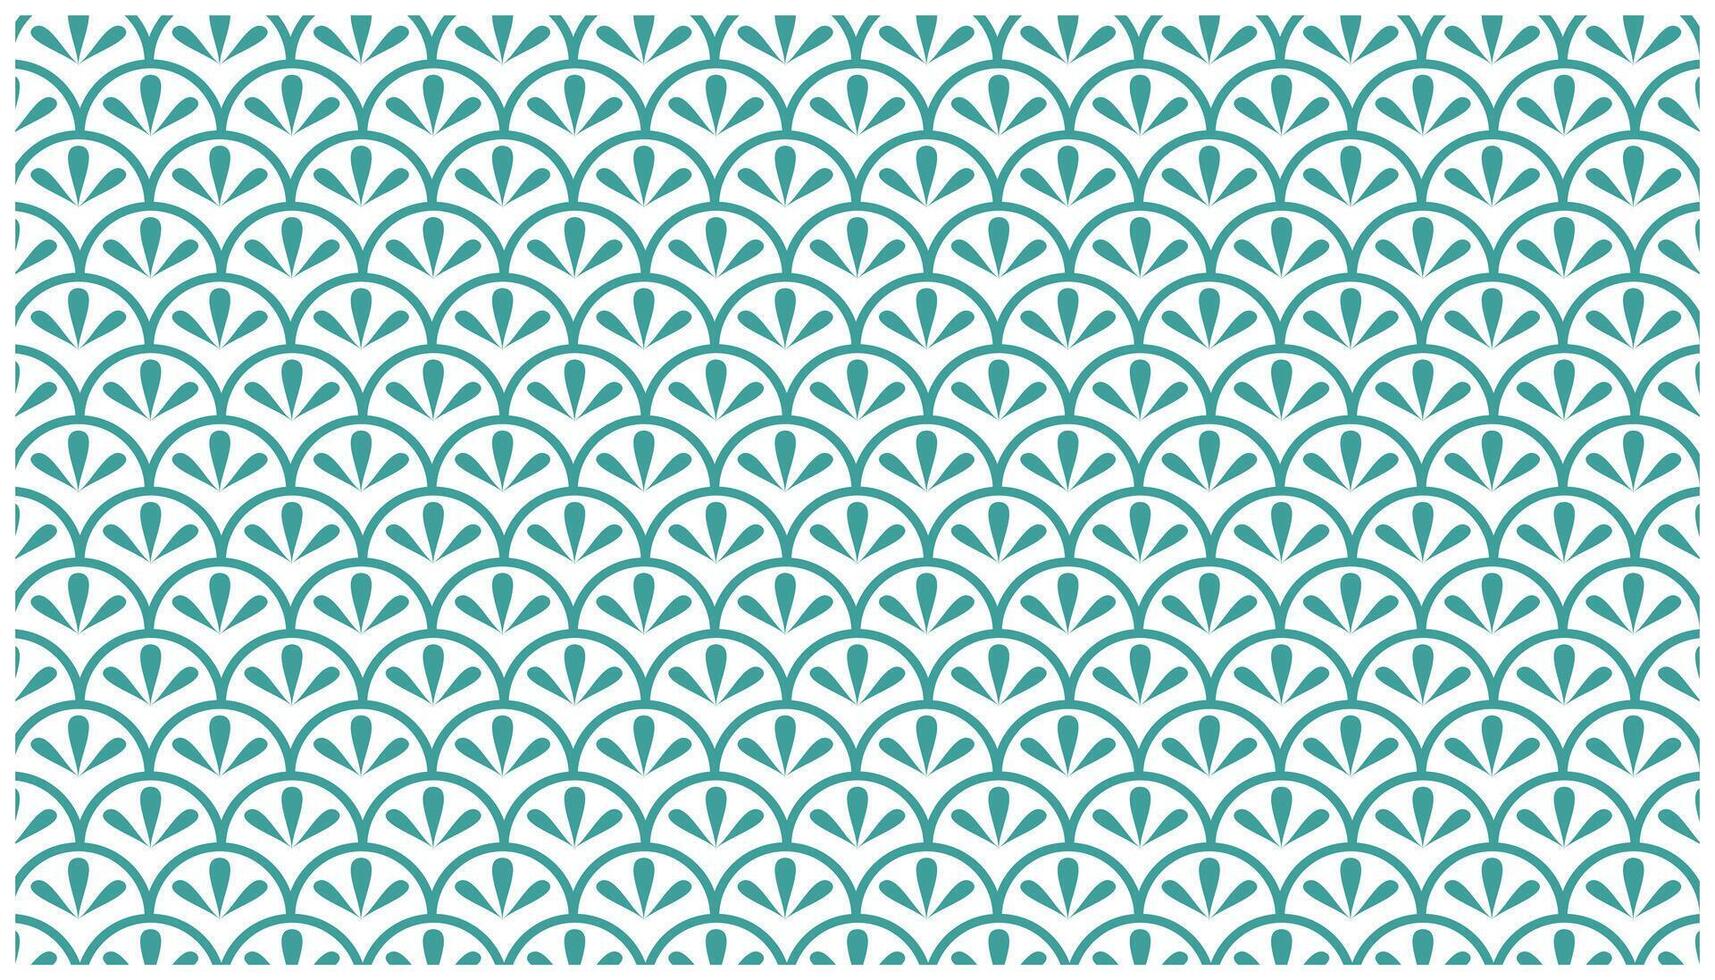 Vektor Muster. Hintergrund Textur im geometrisch Zier Stil. perfekt zum Mode, Textil- Design, süß thematisch Stoff, auf Mauer Papier, Verpackung Papier, Stoffe und Zuhause